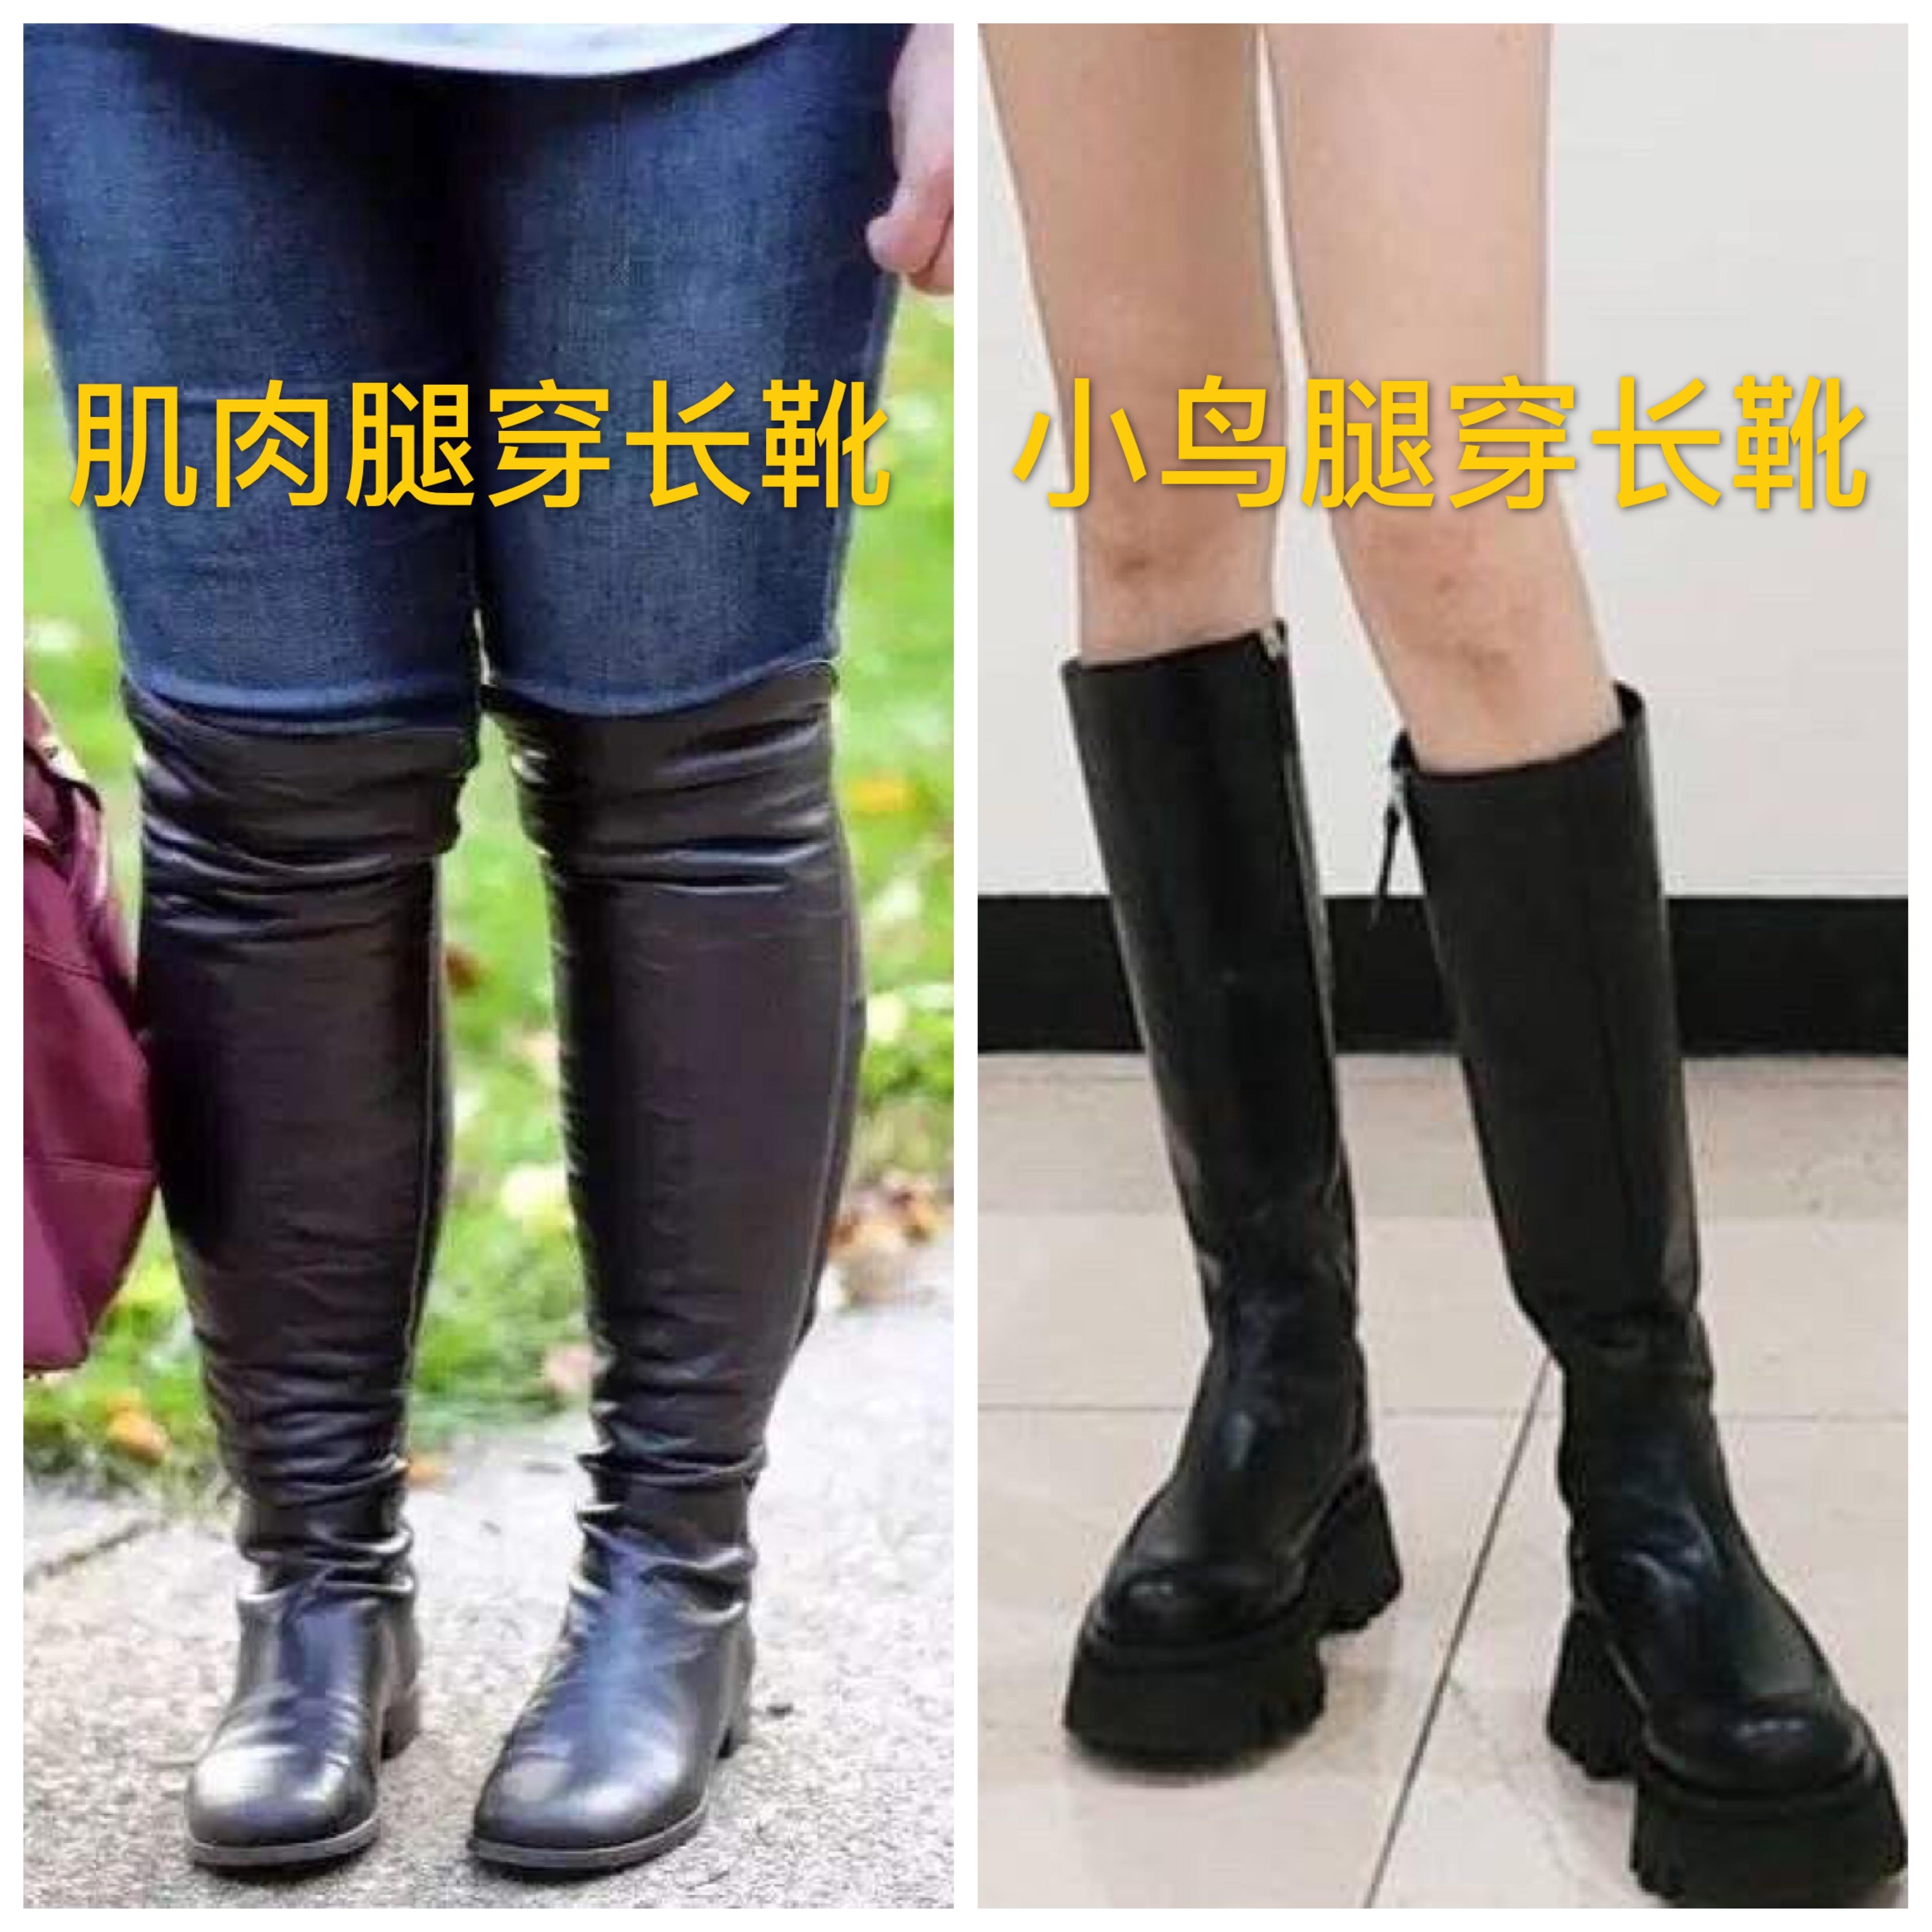 腿短女生不适合穿长靴？用它搭配这些下装，上身增高又显瘦 - 知乎